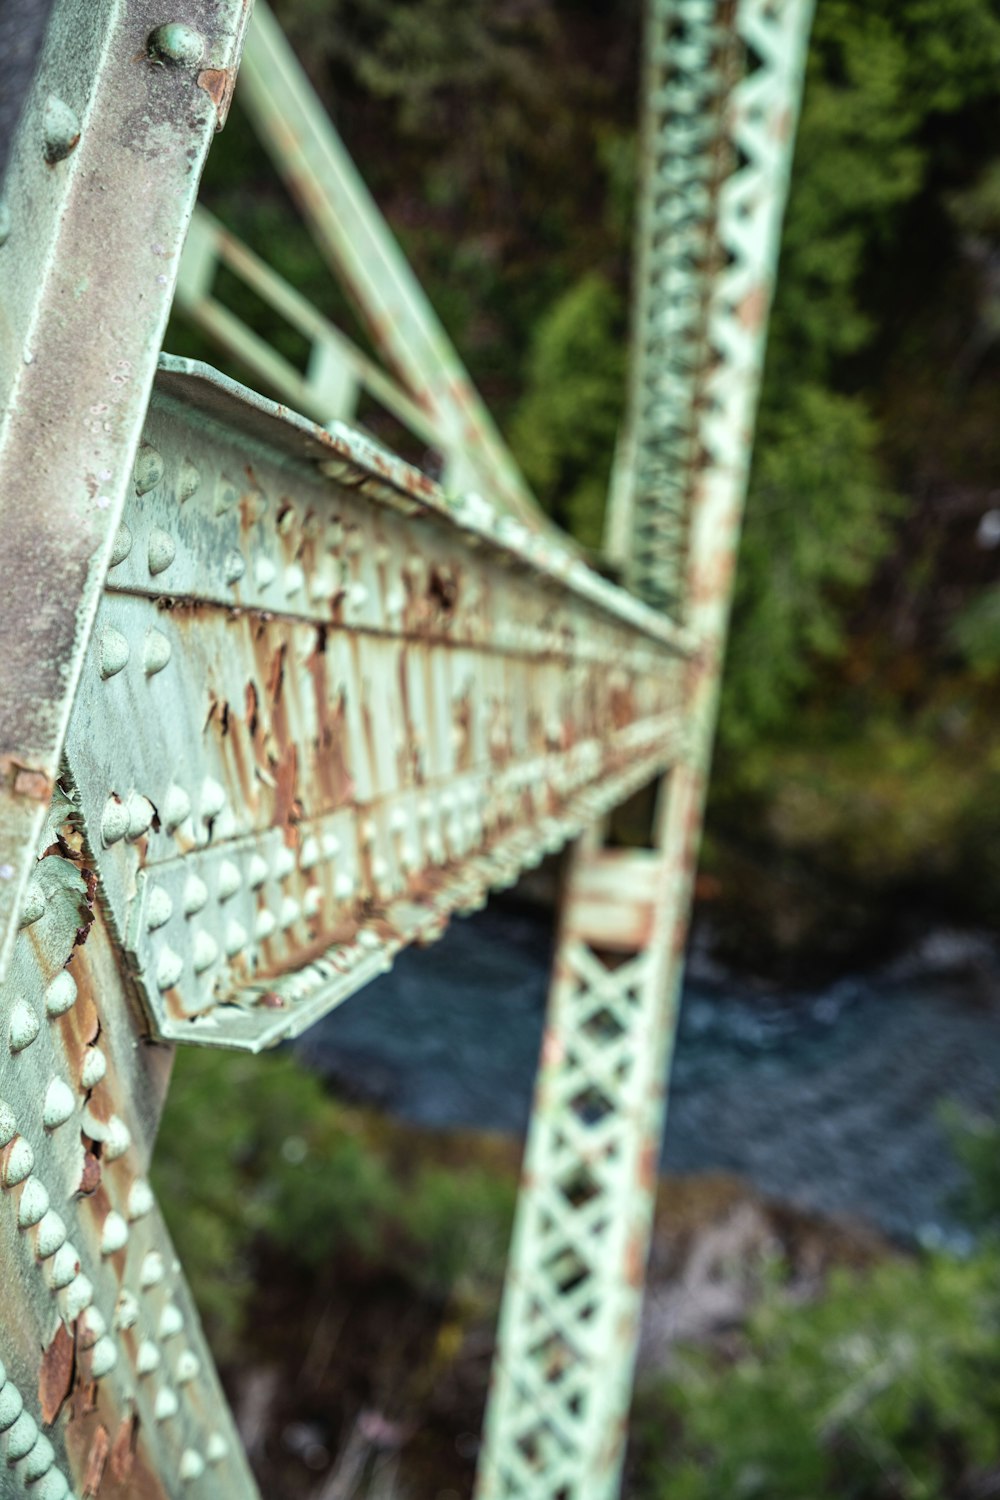 昼間の川に架かる茶色の木造橋